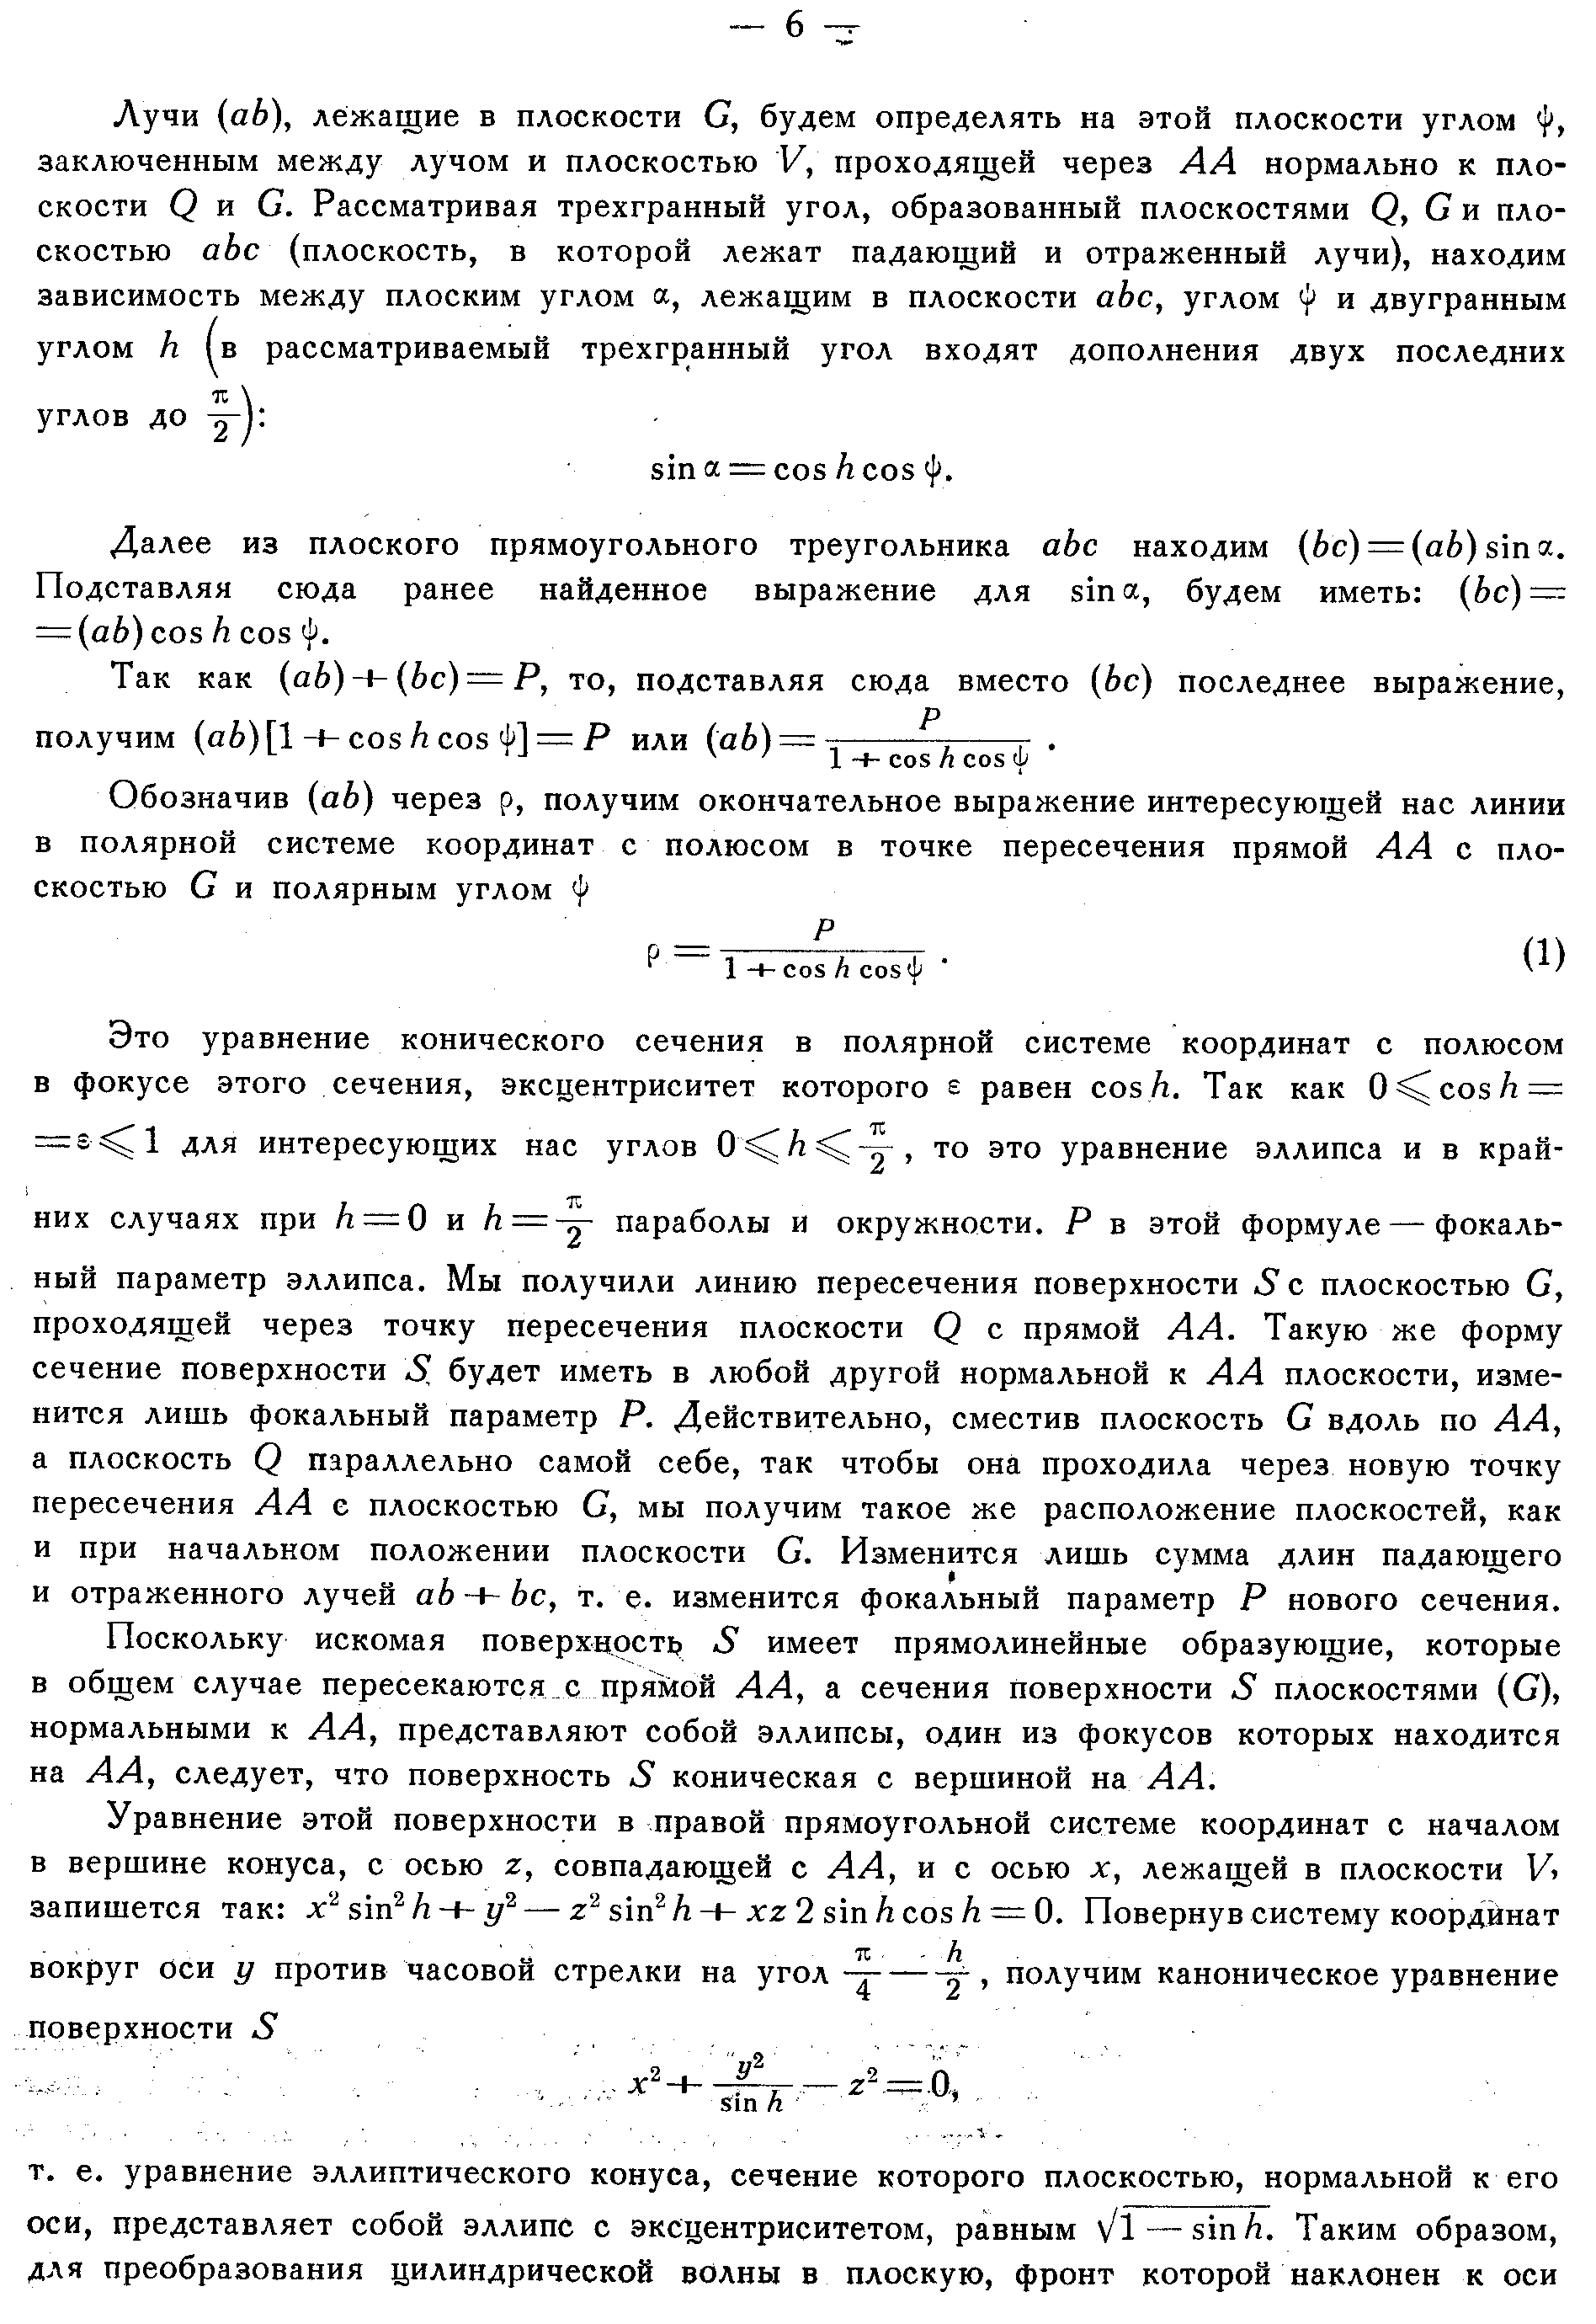 Хайкин С.Э. и др.,стр.4